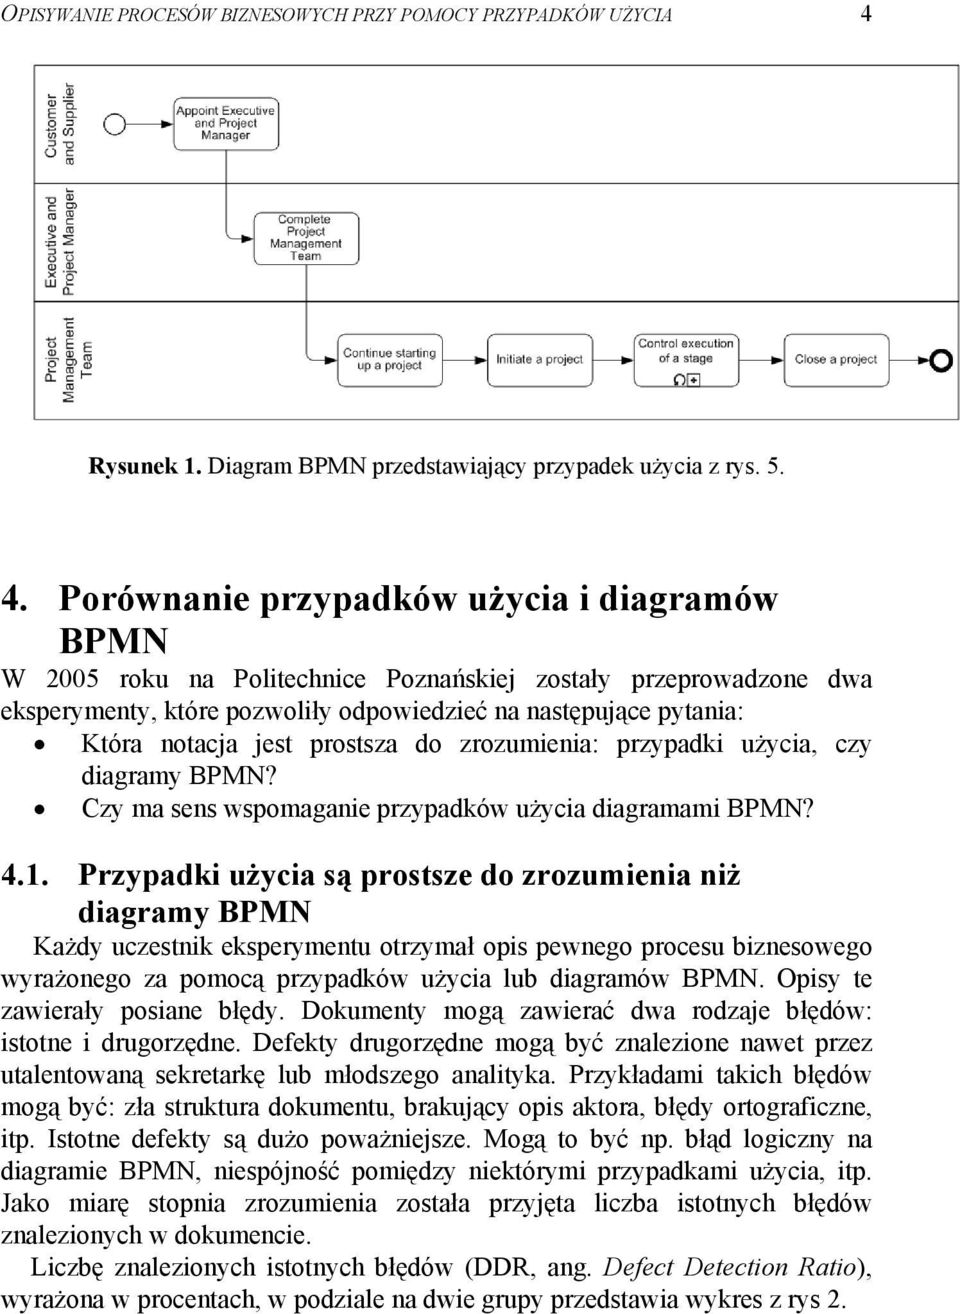 Porównanie przypadków użycia i diagramów BPMN W 2005 roku na Politechnice Poznańskiej zostały przeprowadzone dwa eksperymenty, które pozwoliły odpowiedzieć na następujące pytania: Która notacja jest